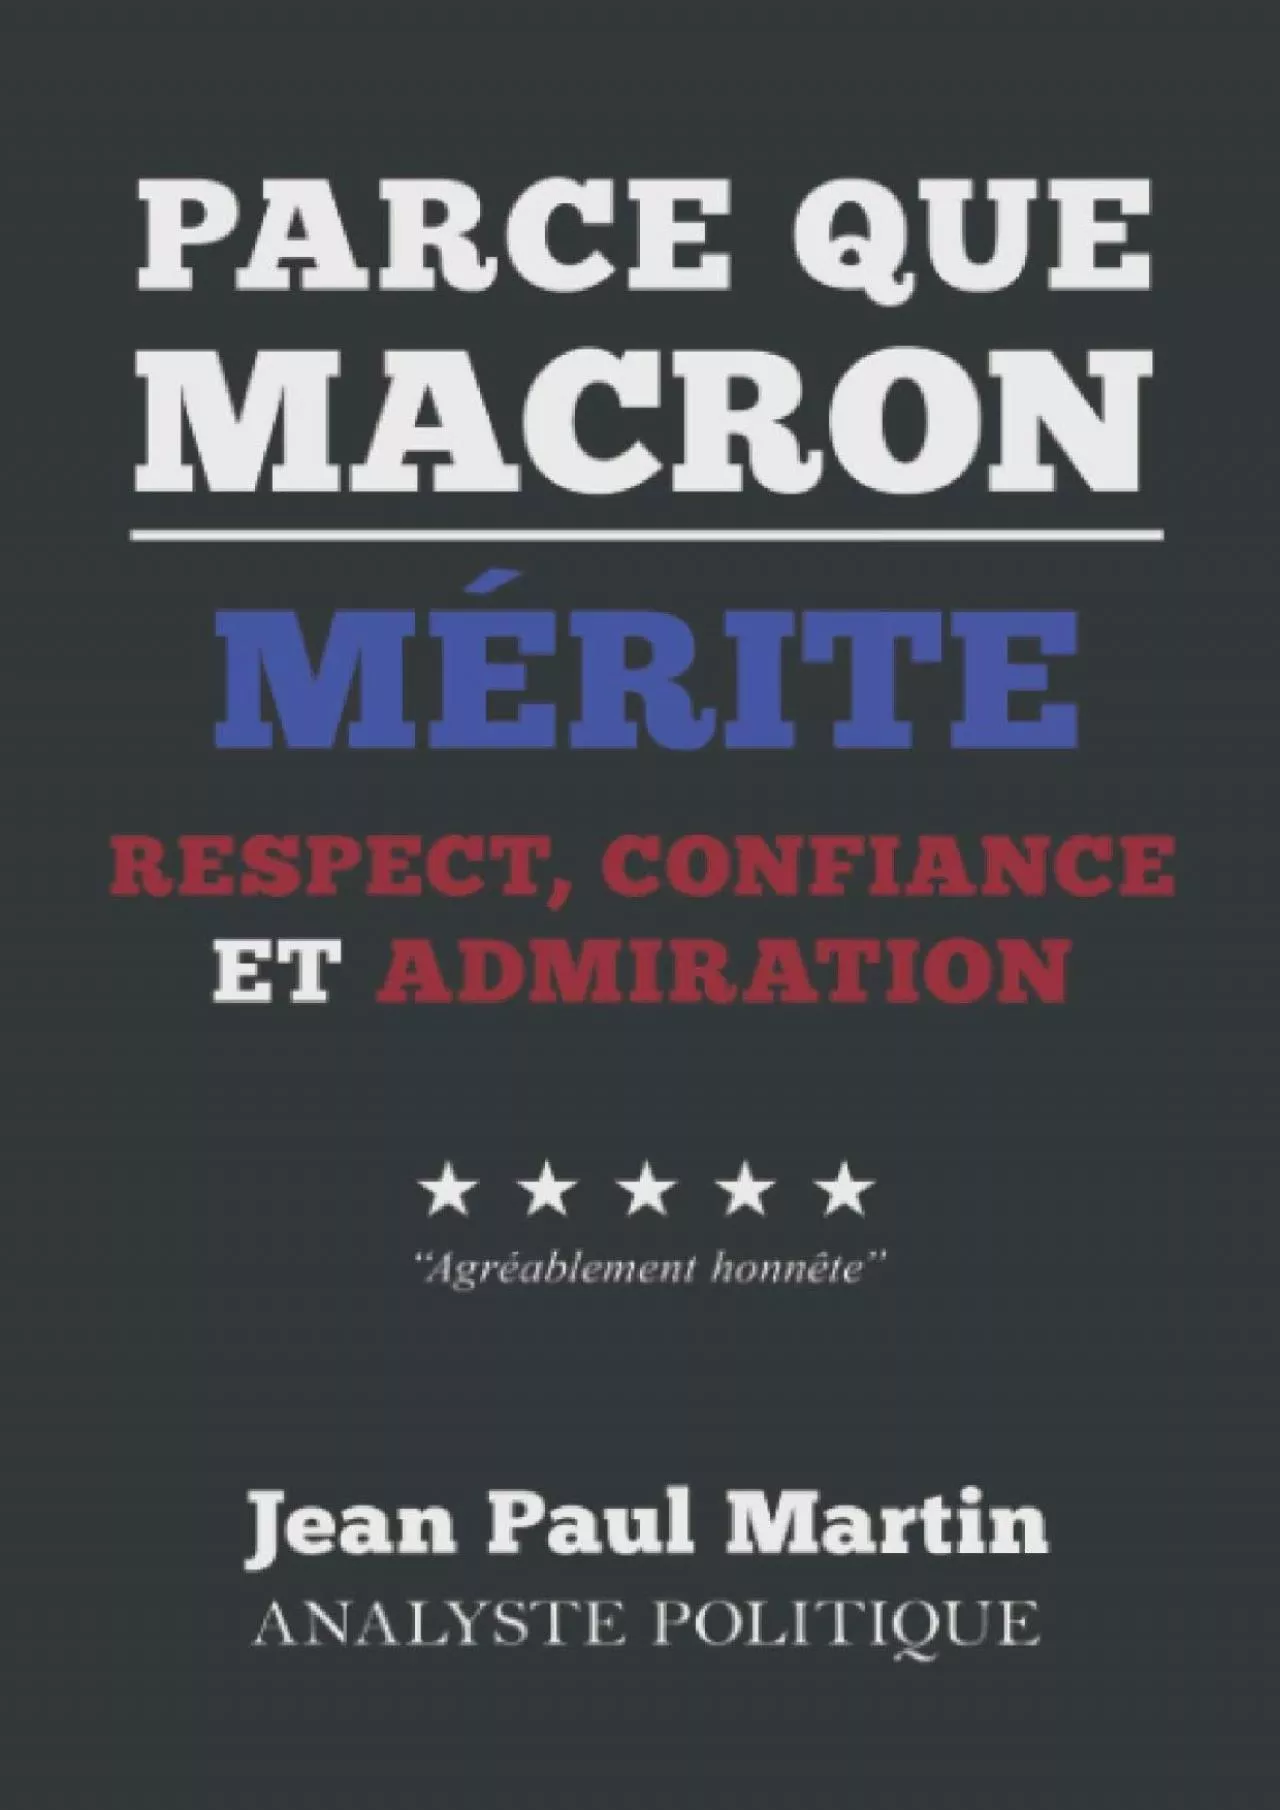 Parce que Macron mÃ©rite respet confiance et admiration (French Edition)